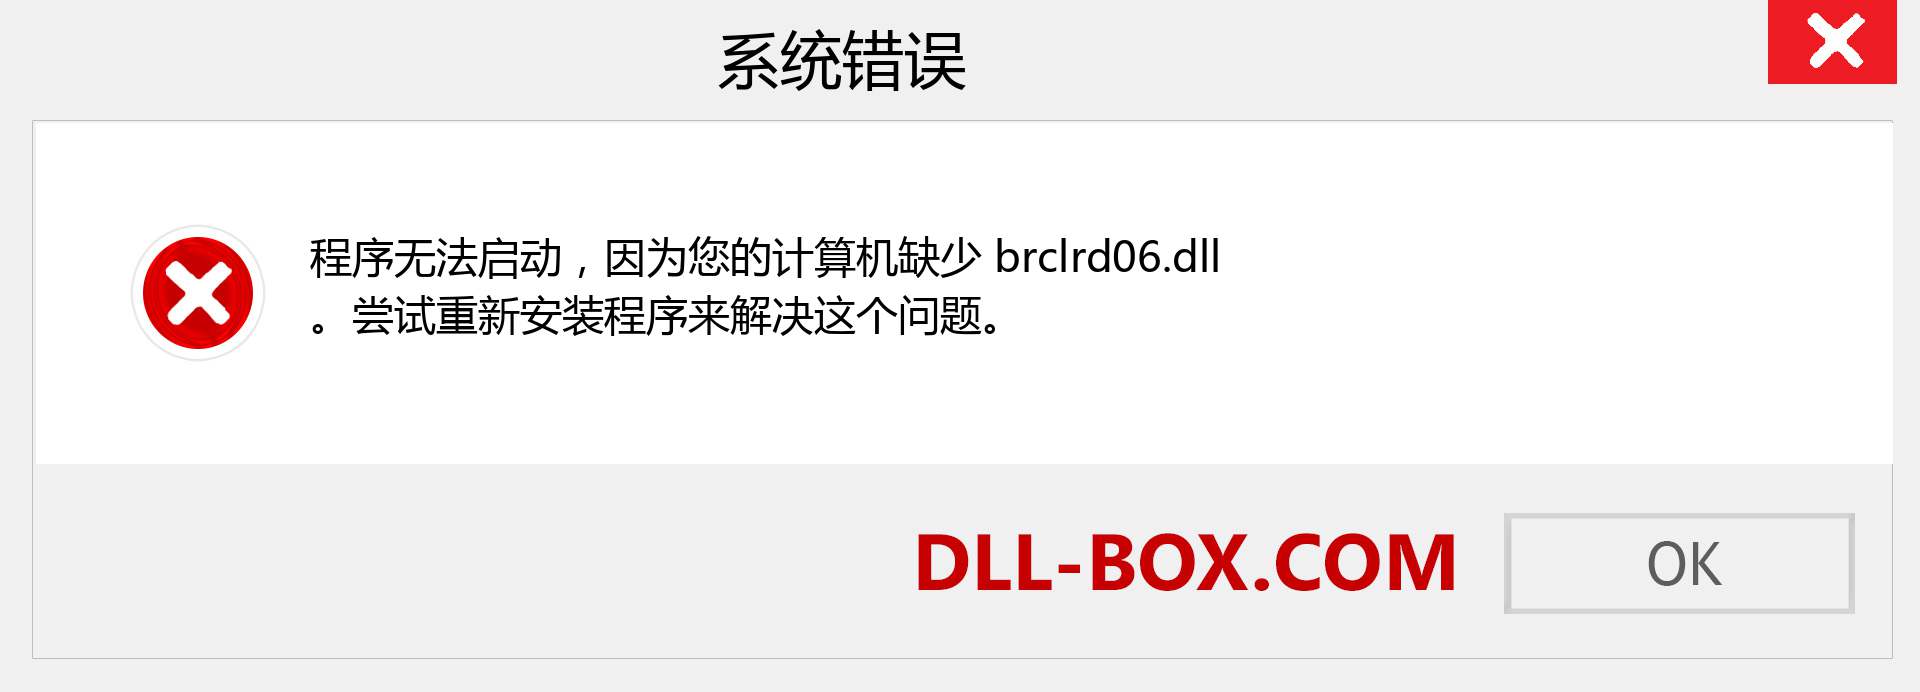 brclrd06.dll 文件丢失？。 适用于 Windows 7、8、10 的下载 - 修复 Windows、照片、图像上的 brclrd06 dll 丢失错误